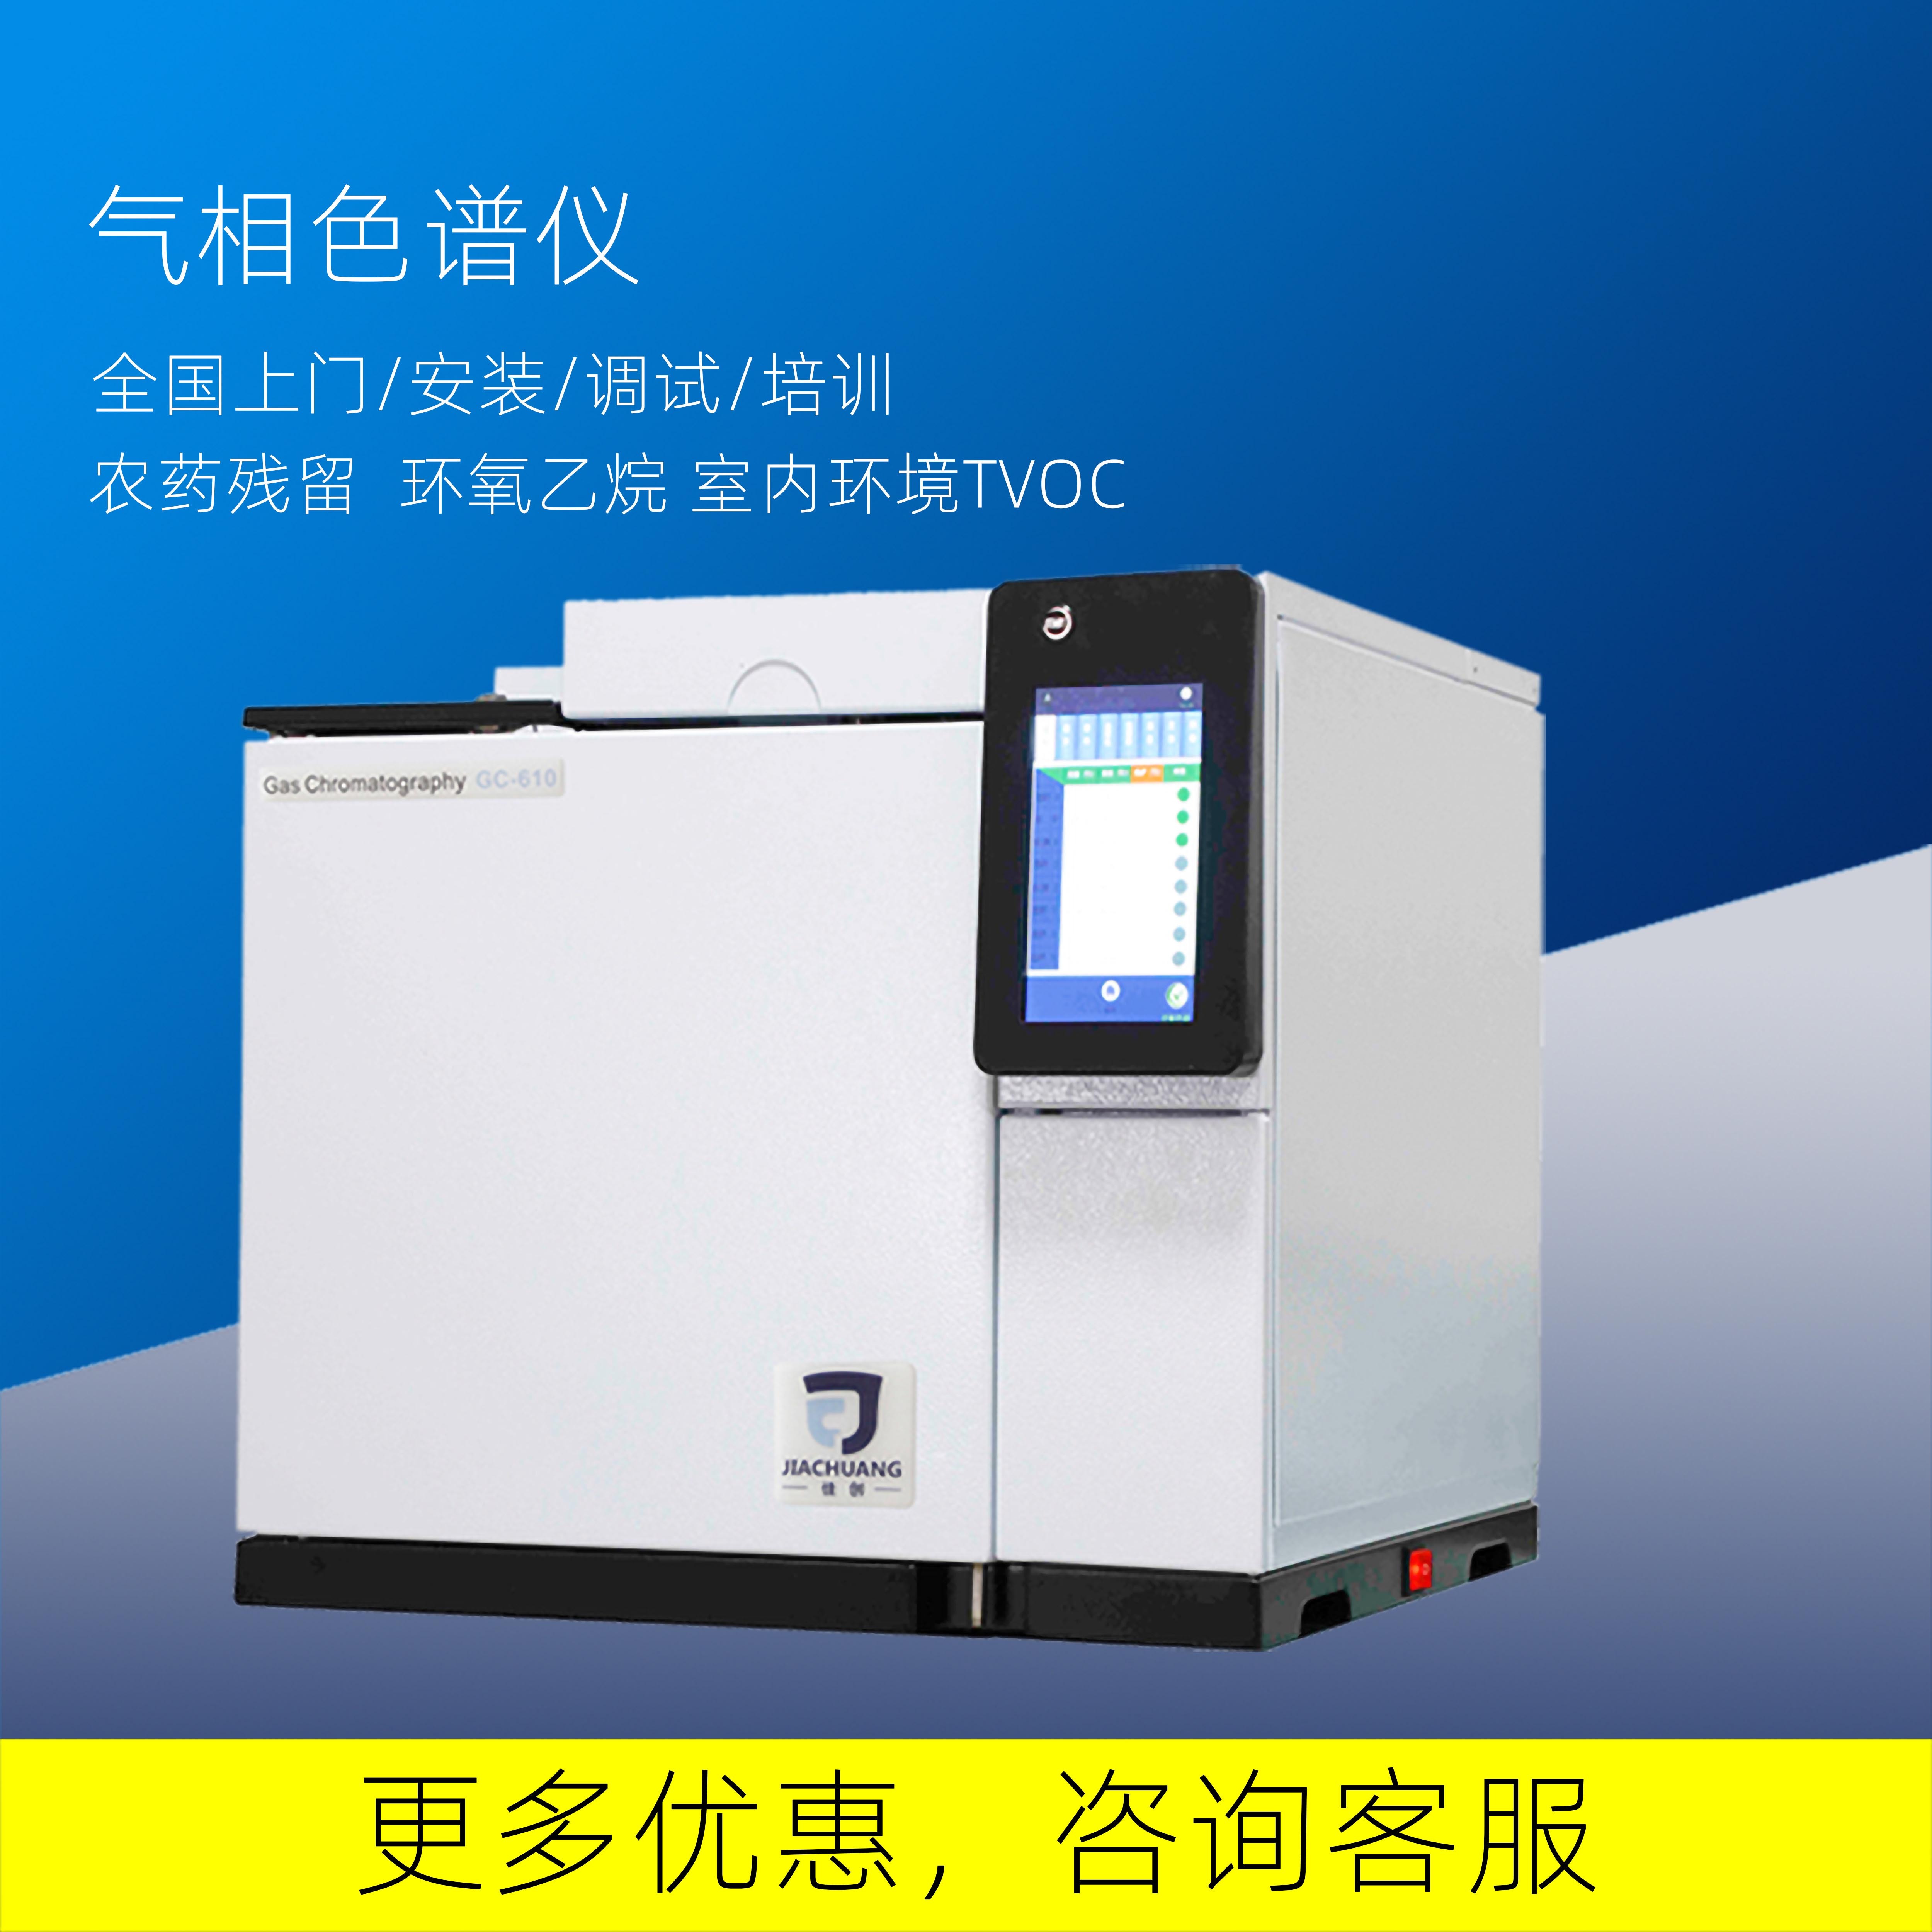 南京佳创供应气相色谱仪GC-610农药检测